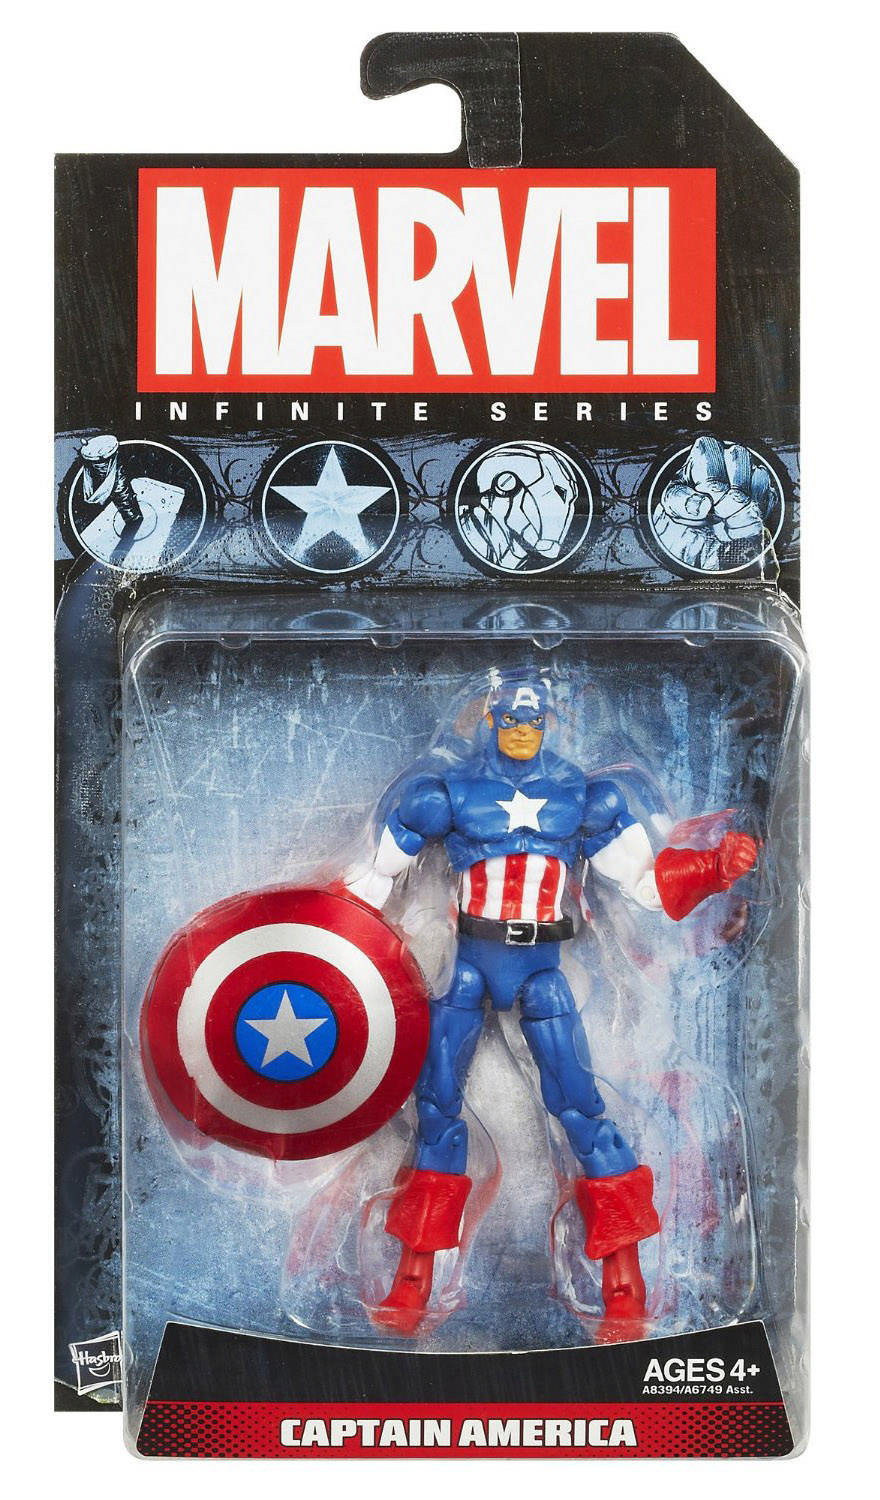 Marvel Avengers Captain America 6" Figure 2017 MOC Hasbro for sale online 